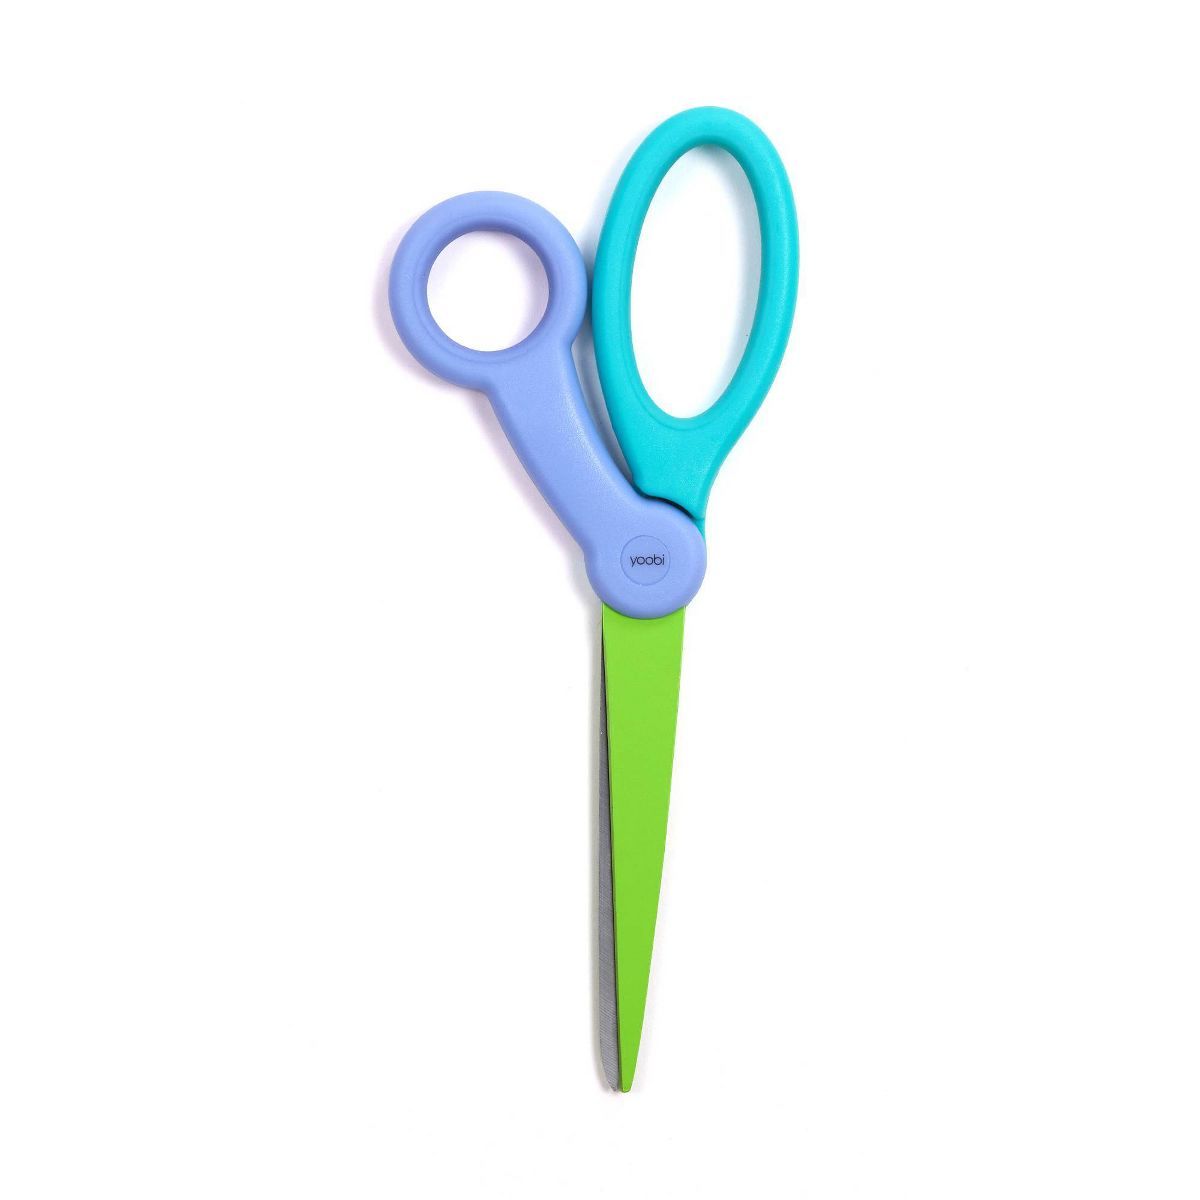 Scissors Color Block - Yoobi™ | Target